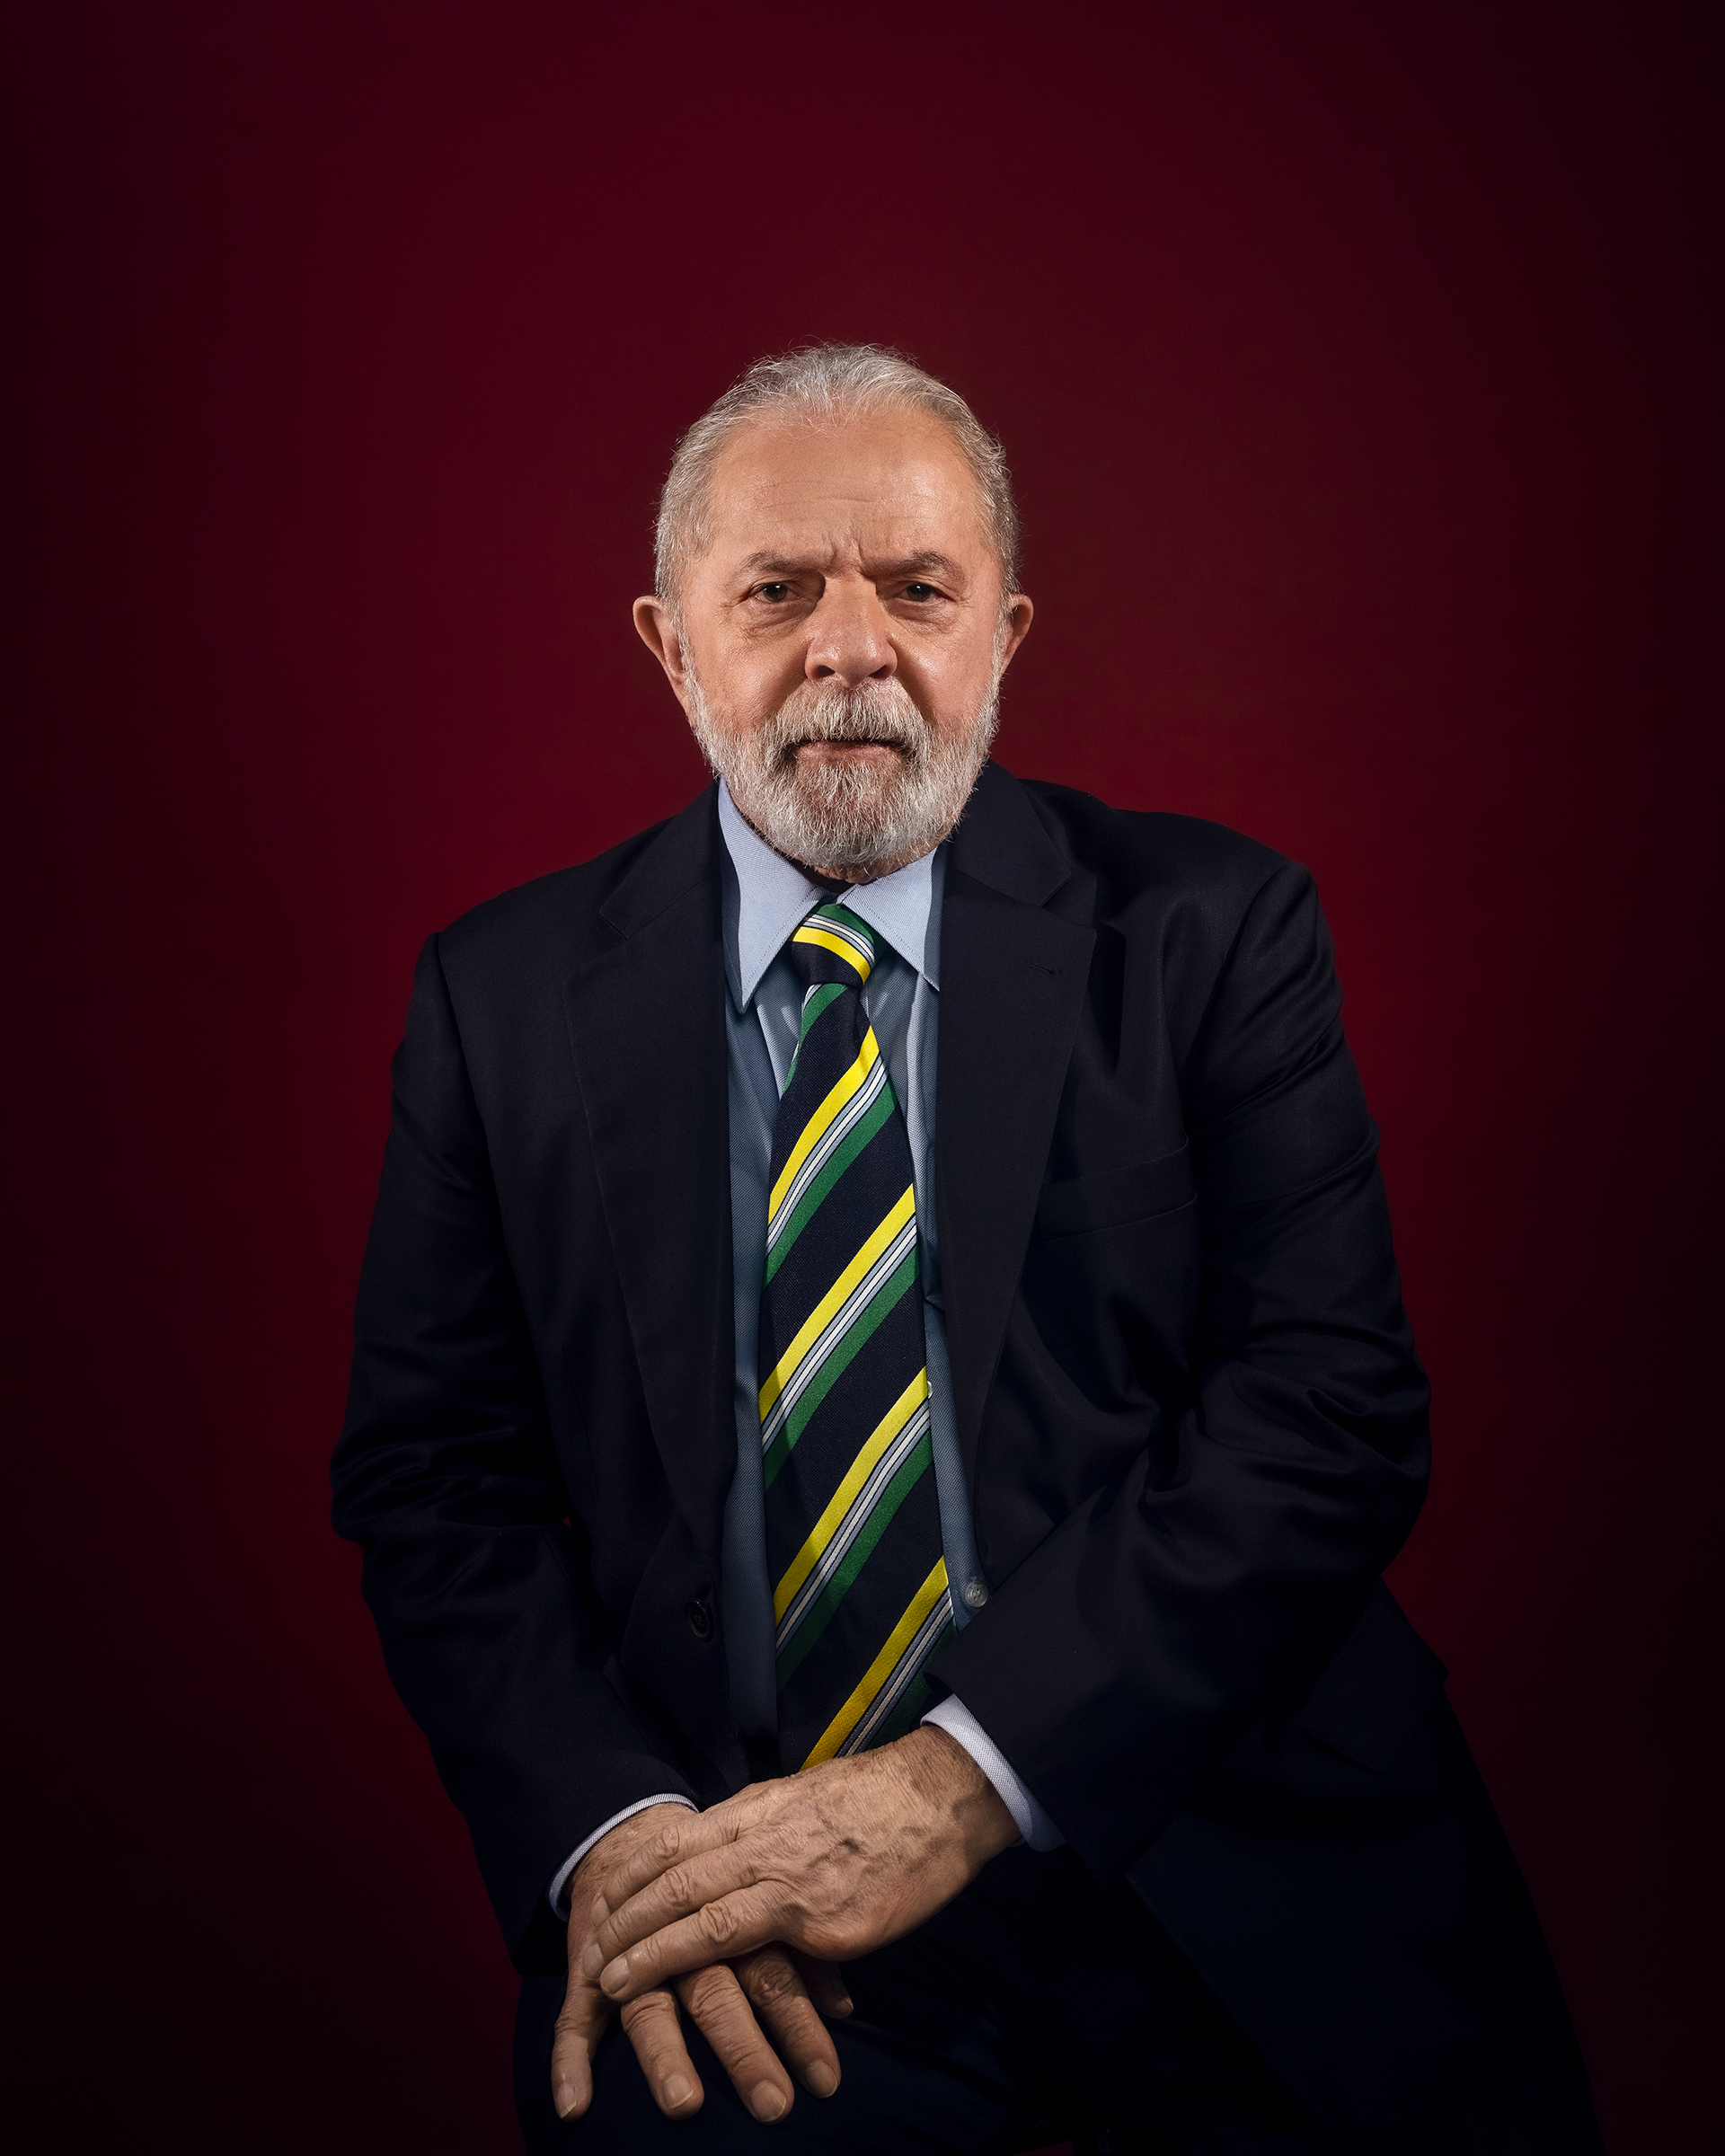 Entrevista de Lula sobre Ucrânia, Bolsonaro e o futuro do Brasil | Time